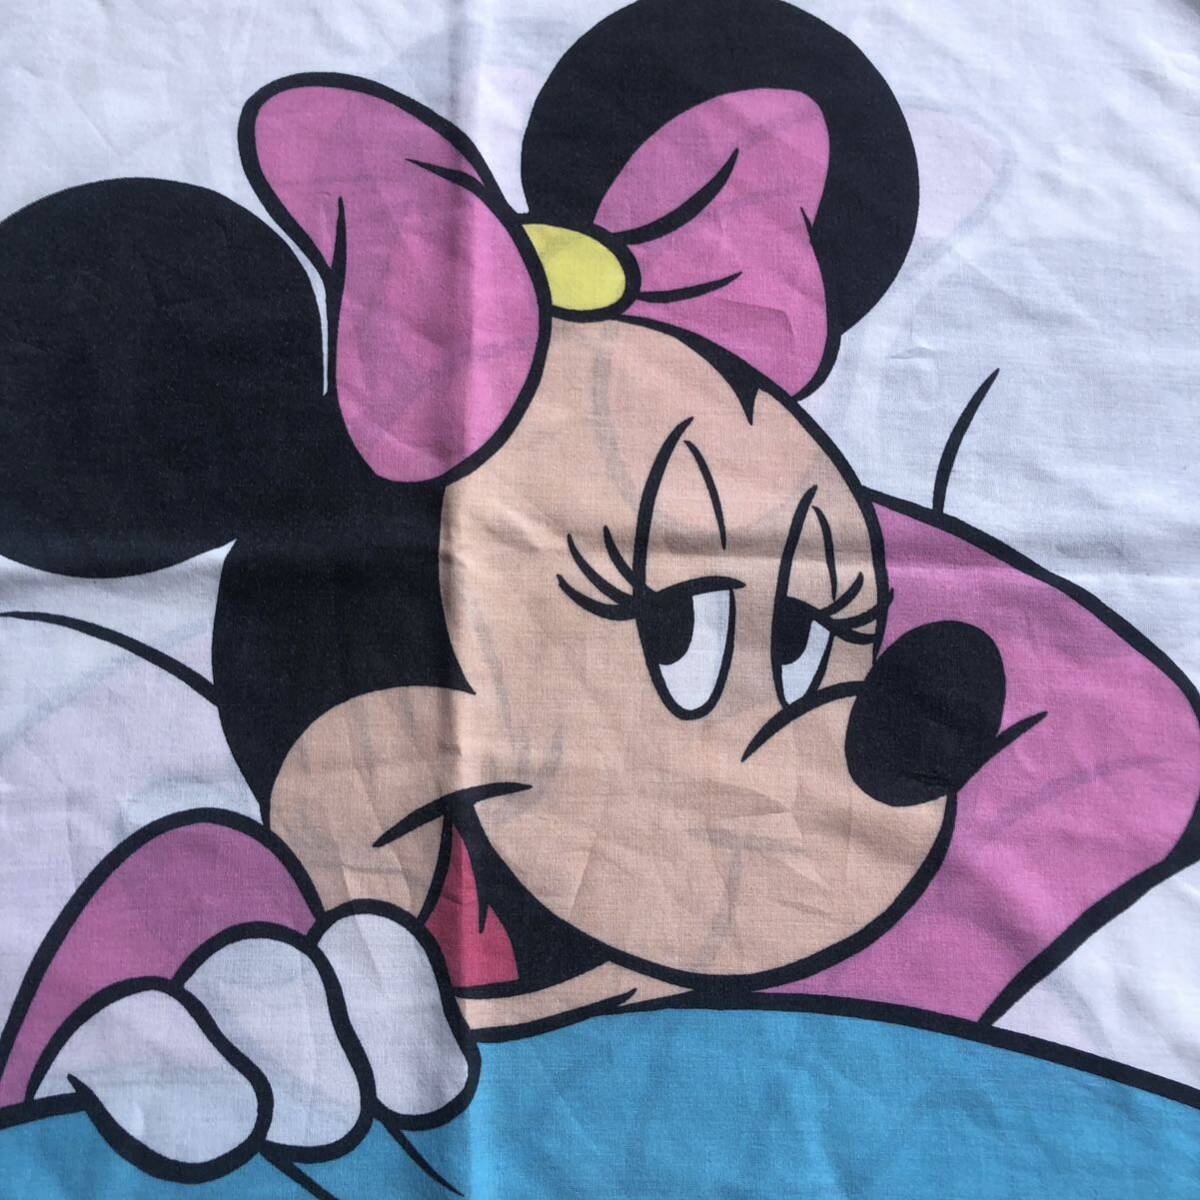 USA Vintage pillow кейс Minnie Mouse Disney Disney подушка покрытие Cara переделка ткань материалы пакет форма двусторонний принт America скупка B1976